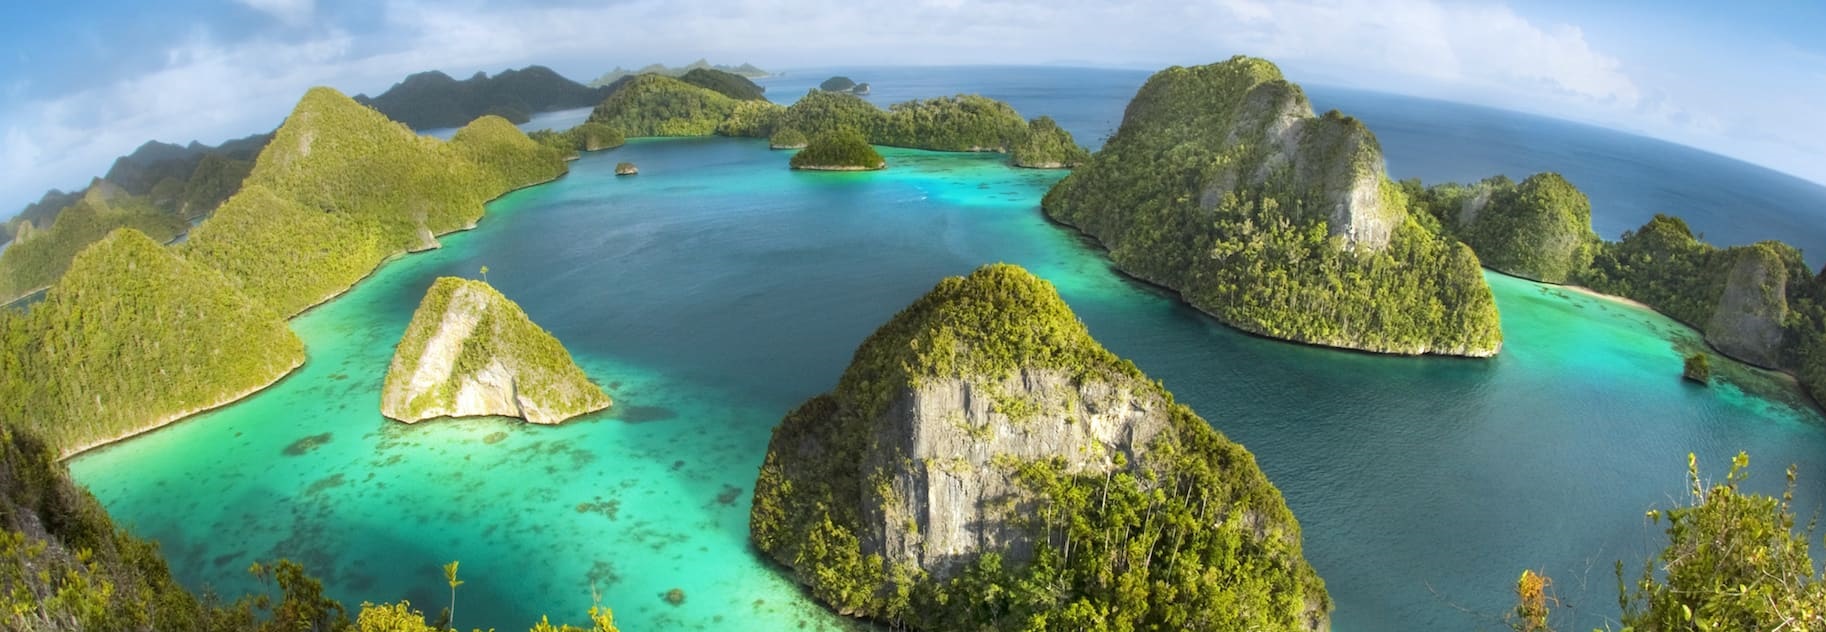 Du Lịch Indonesia | Tổng hợp Tour Indonesia 2023 đảo Bali hấp dẫn giá siêu tốt